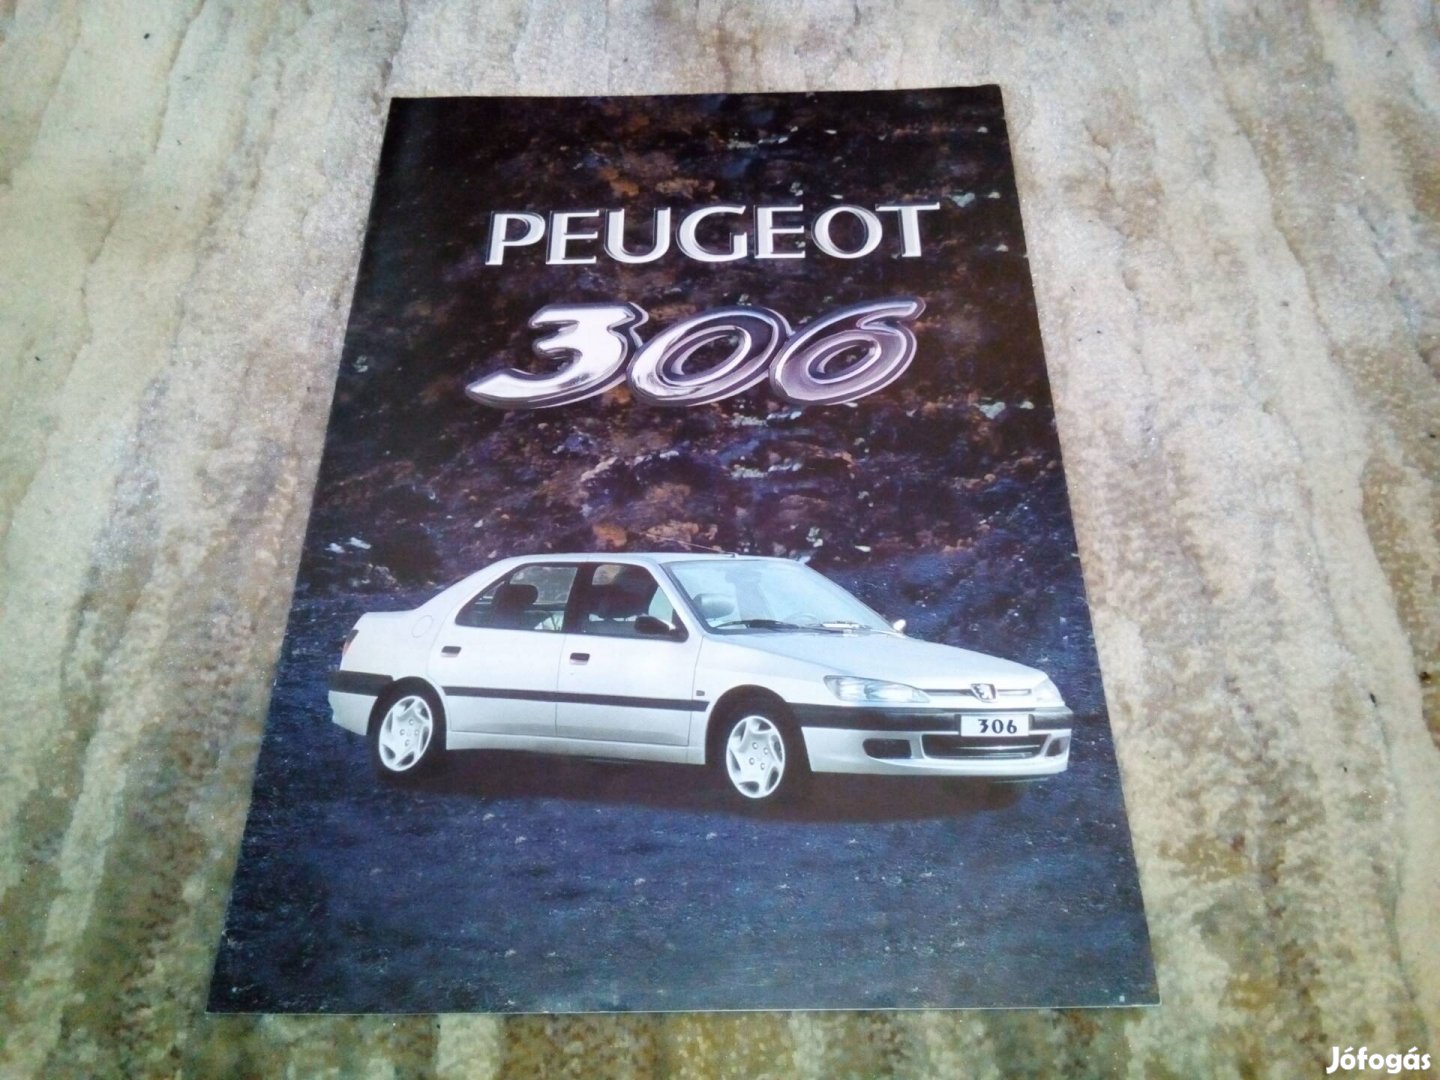 Peugeot 306 magyar nyelvű prospektus, katalógus.